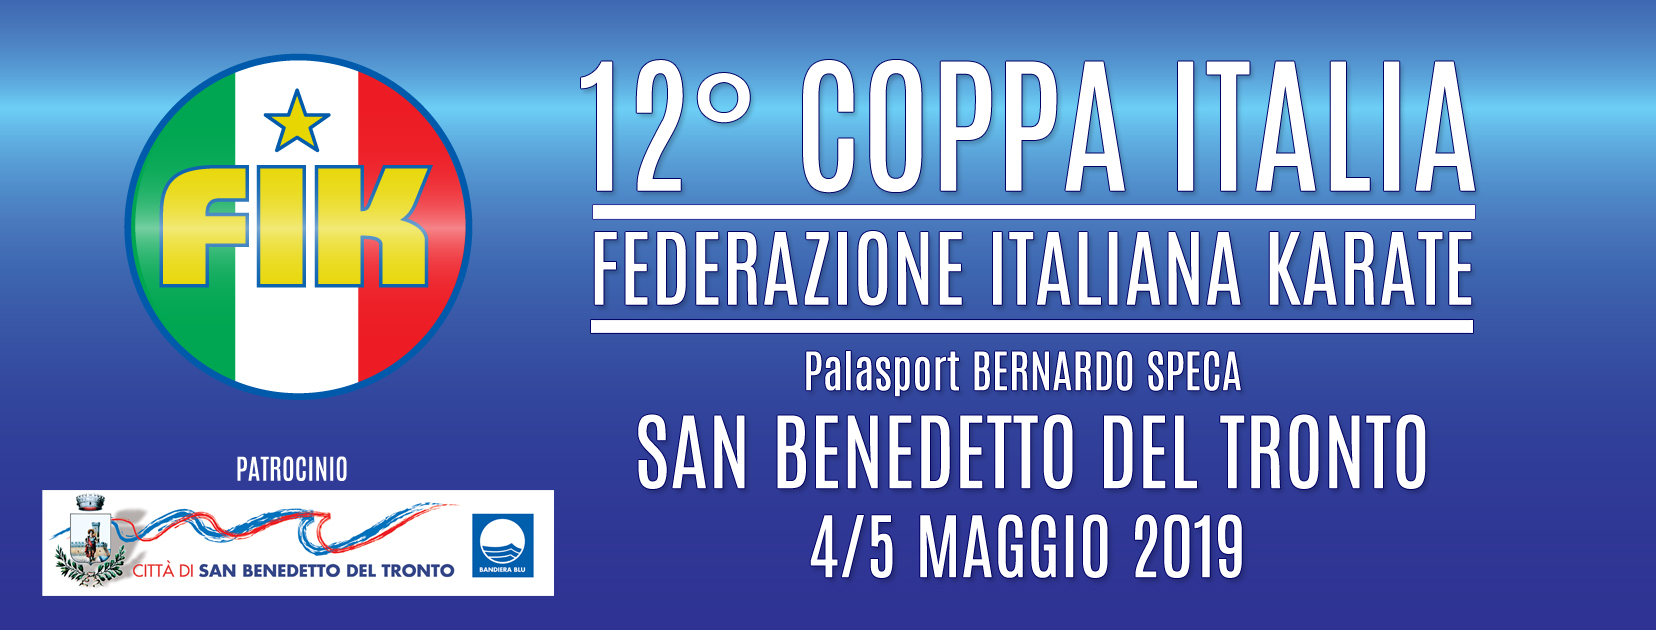 12° Coppa Italia